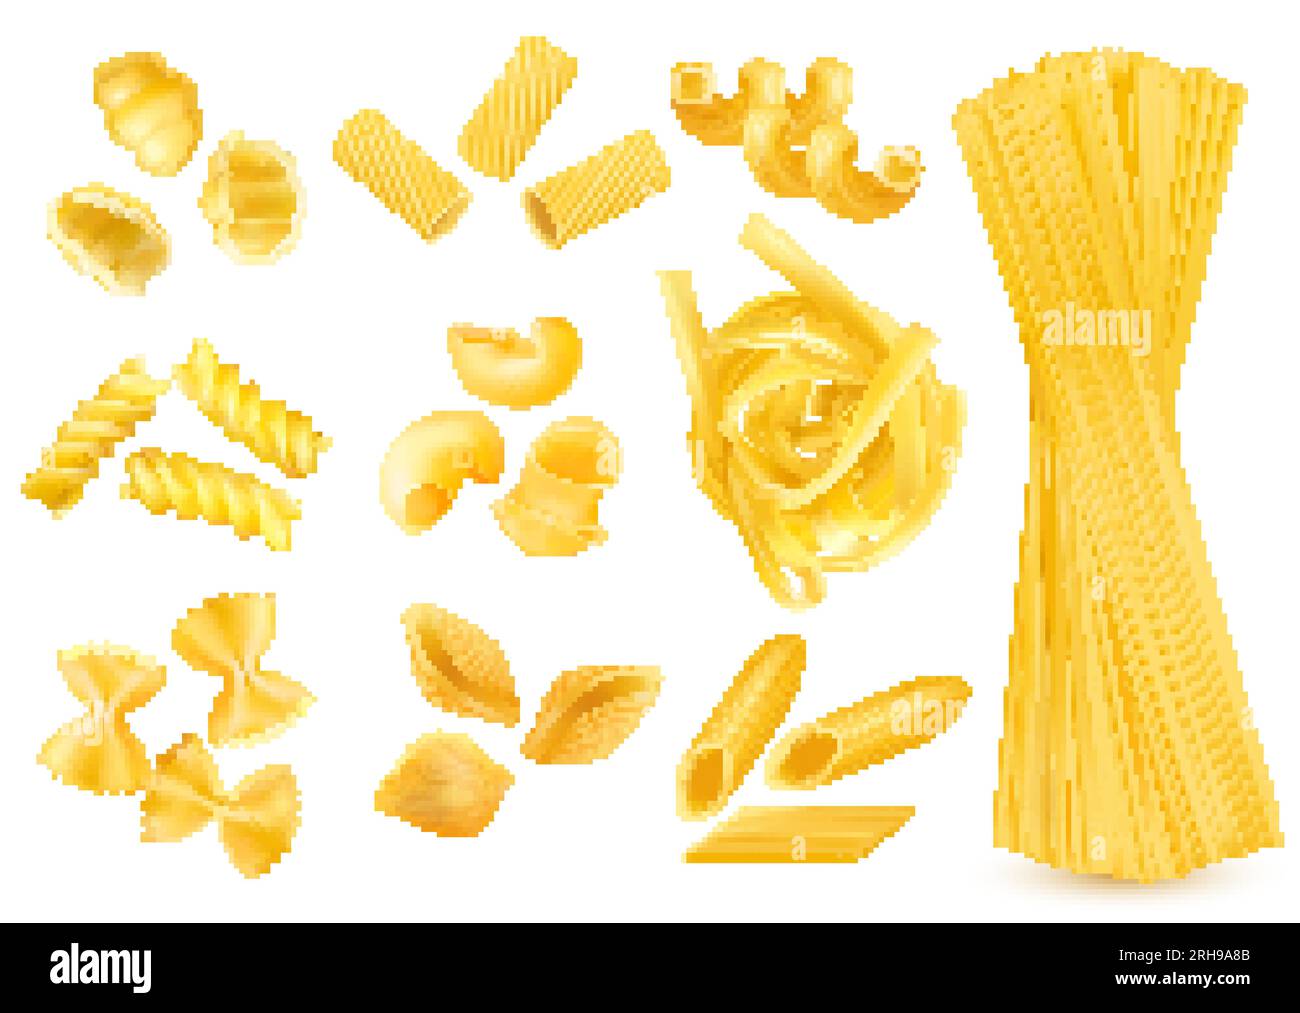 Realistische Darstellung von trockenen italienischen Nudelsorten, isoliert auf weißem Hintergrund Stock Vektor